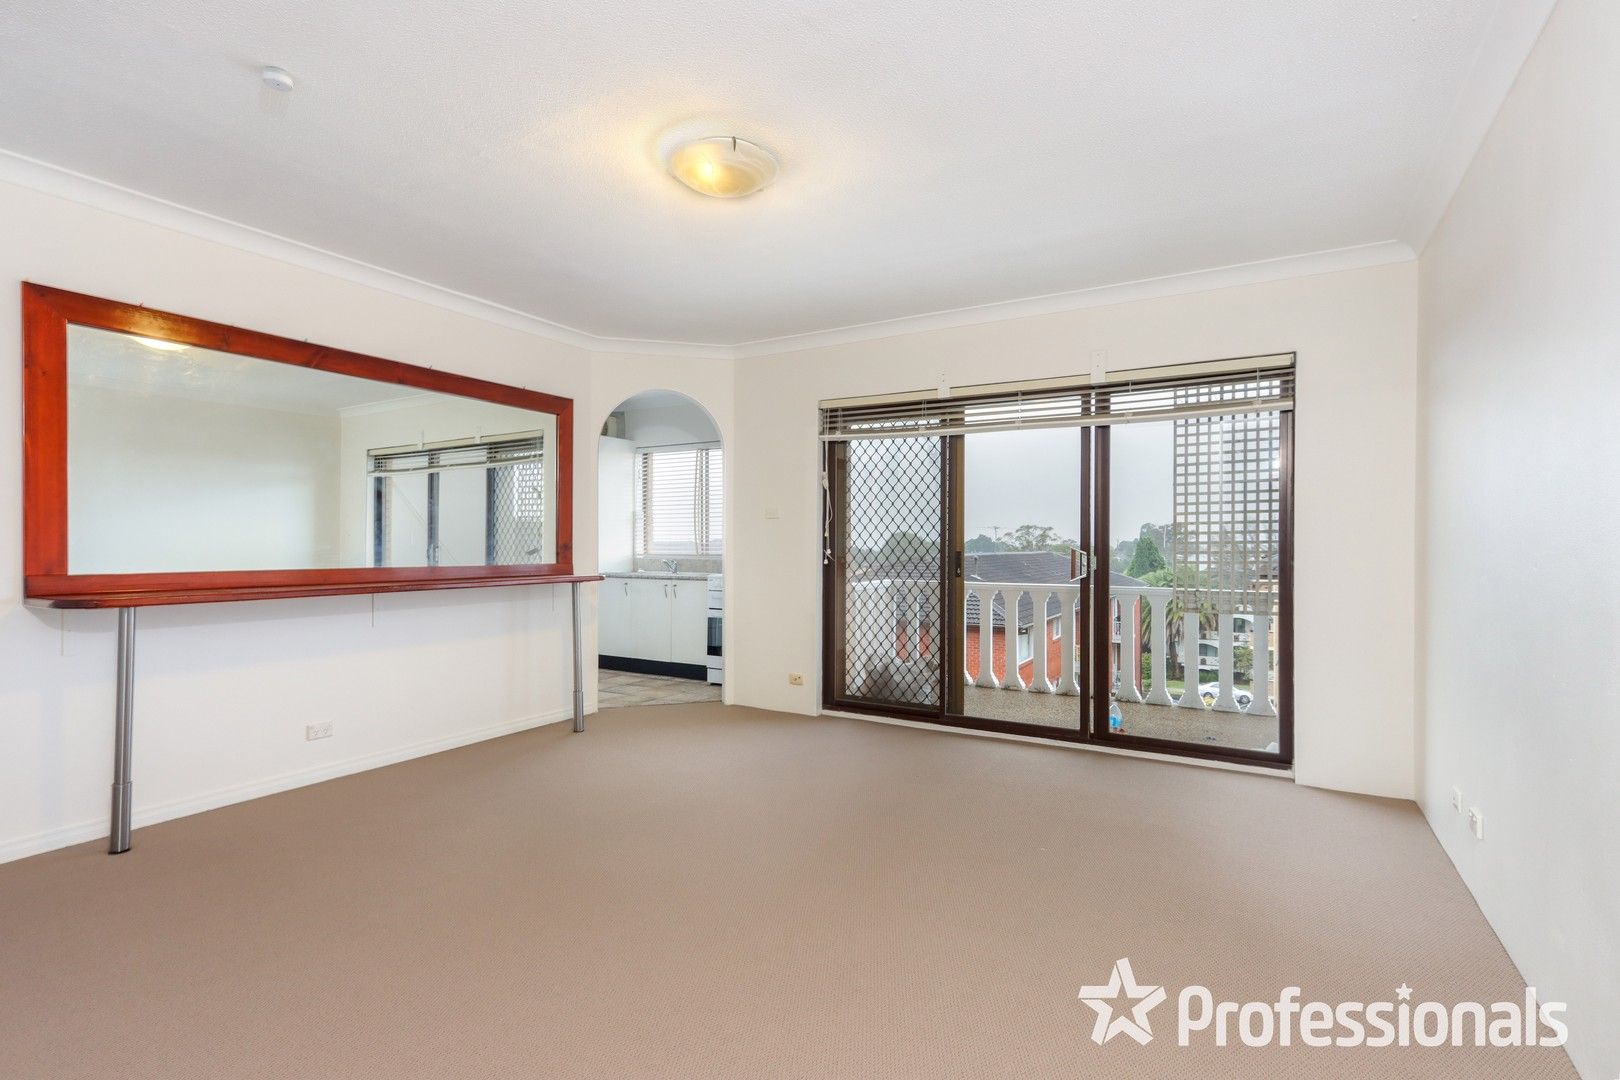 2 bedrooms Apartment / Unit / Flat in 11/30 Ocean Street PENSHURST NSW, 2222